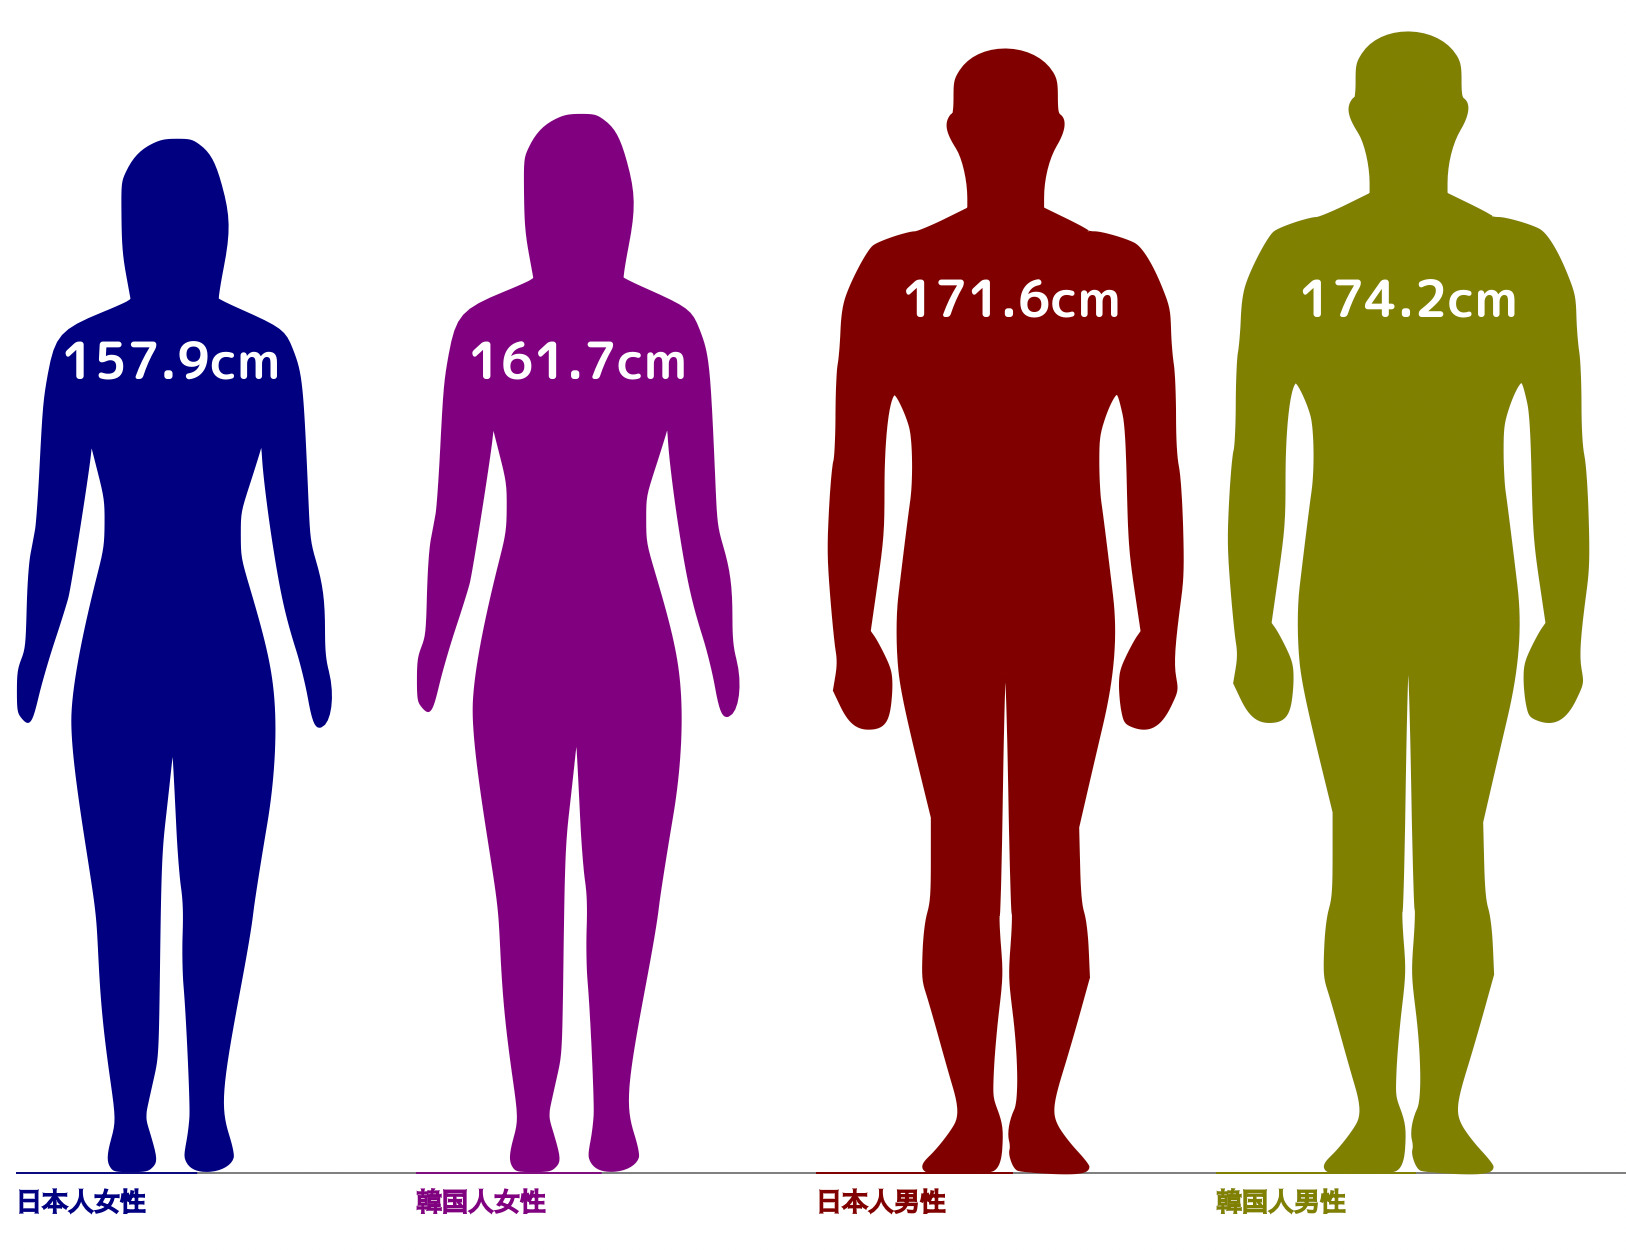 日本人との比較から見る韓国人の平均身長